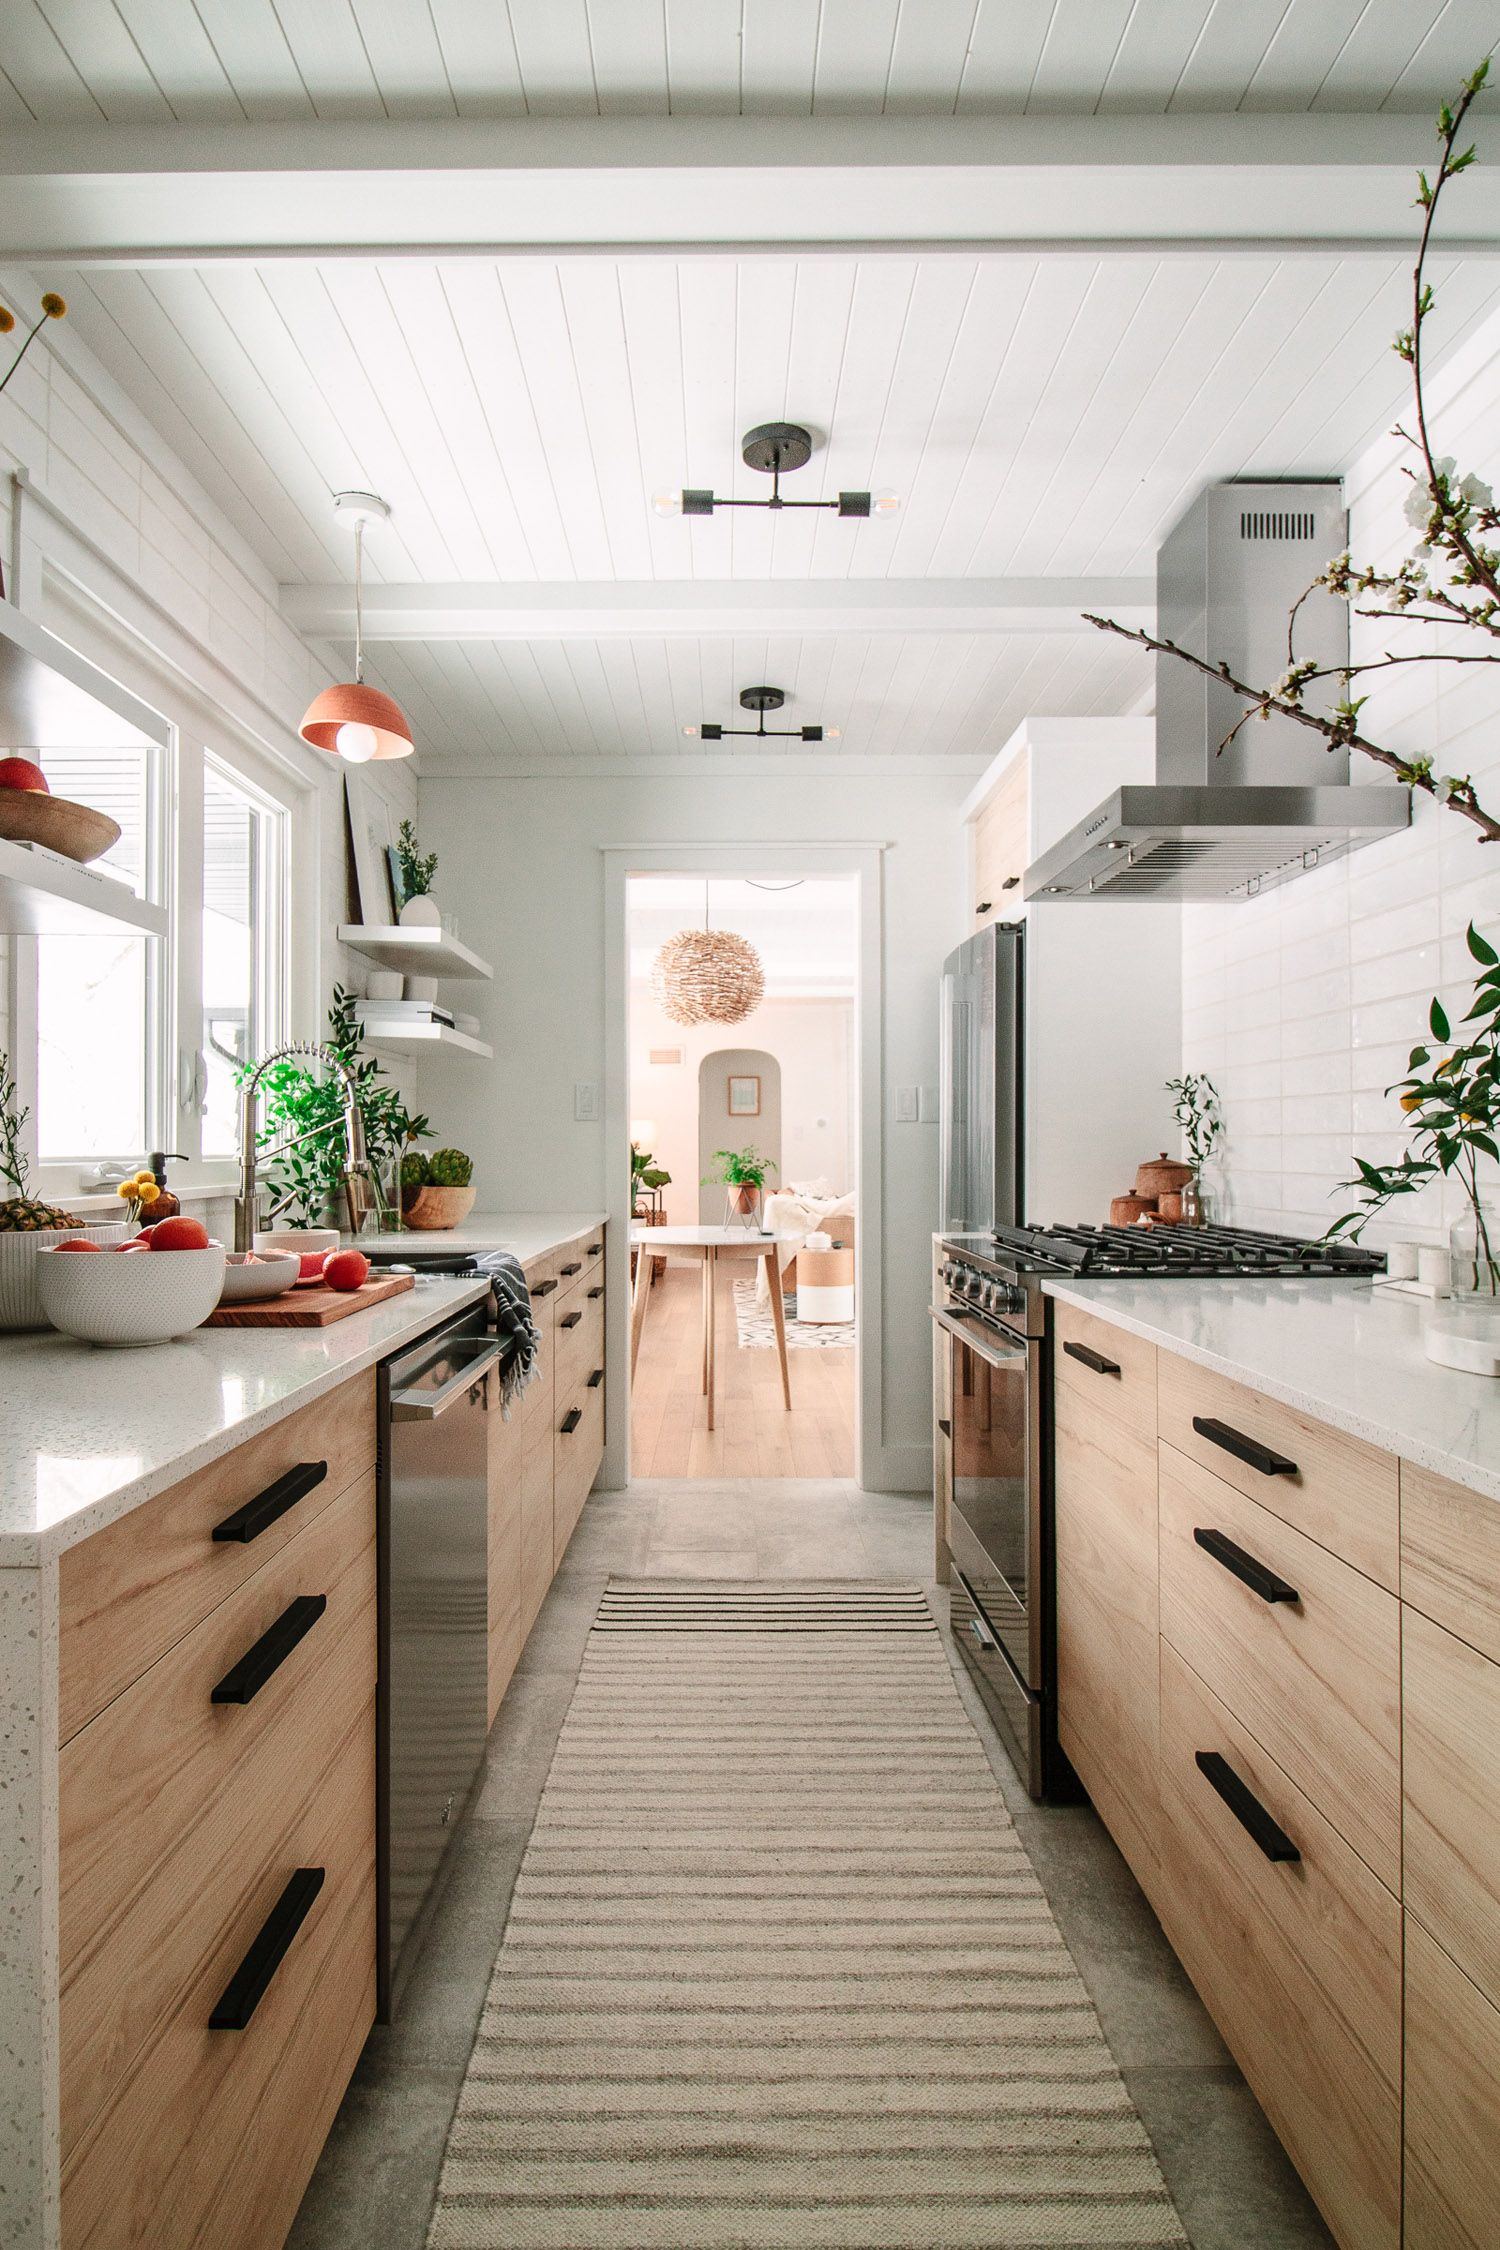 galley kitchen renovation ideas